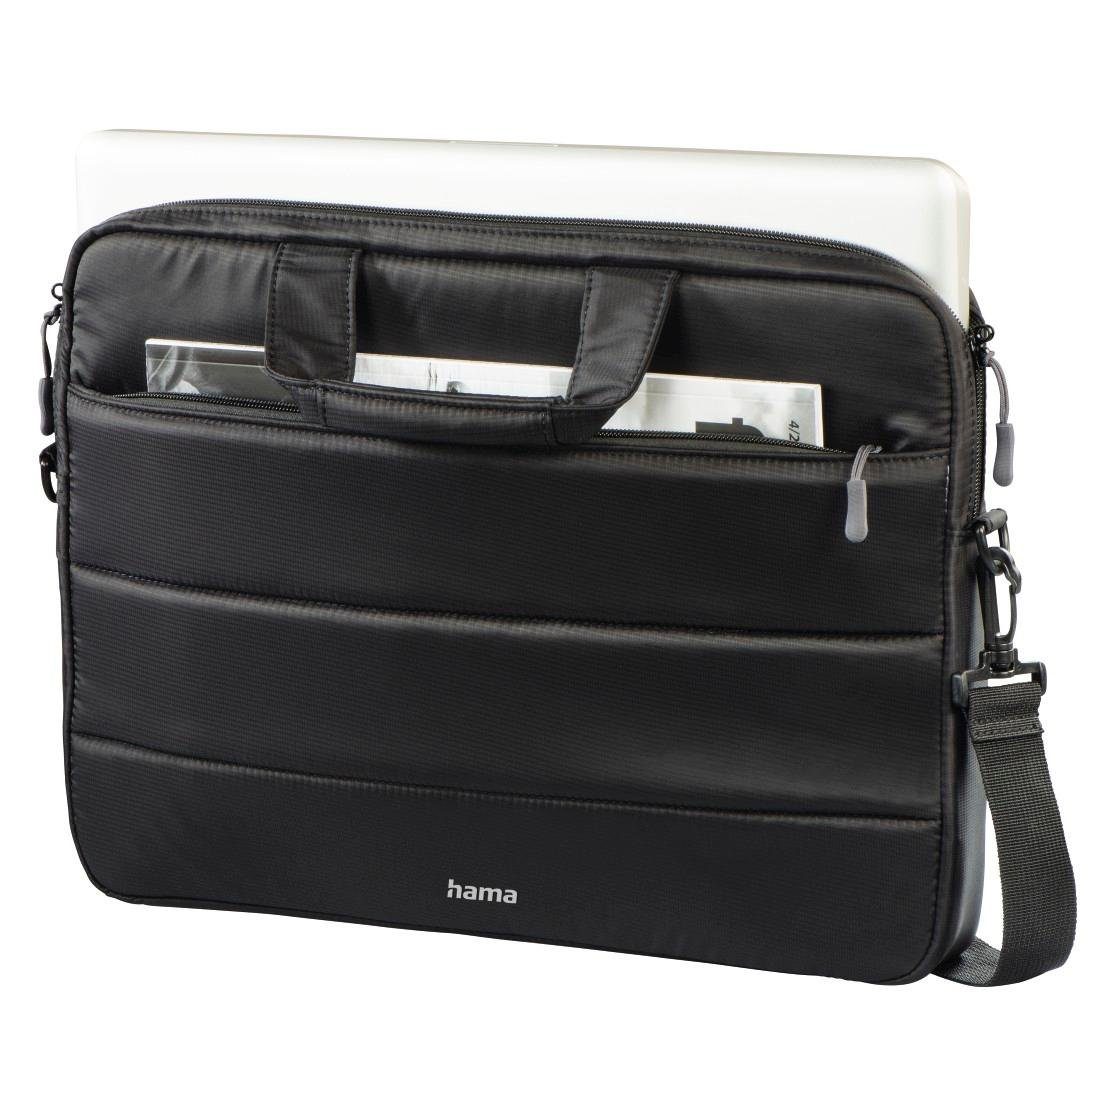 Hama Laptoptasche bis 41 cm (16,2), "Toronto", Schwarz, Laptop-Tasche Notebooktasche